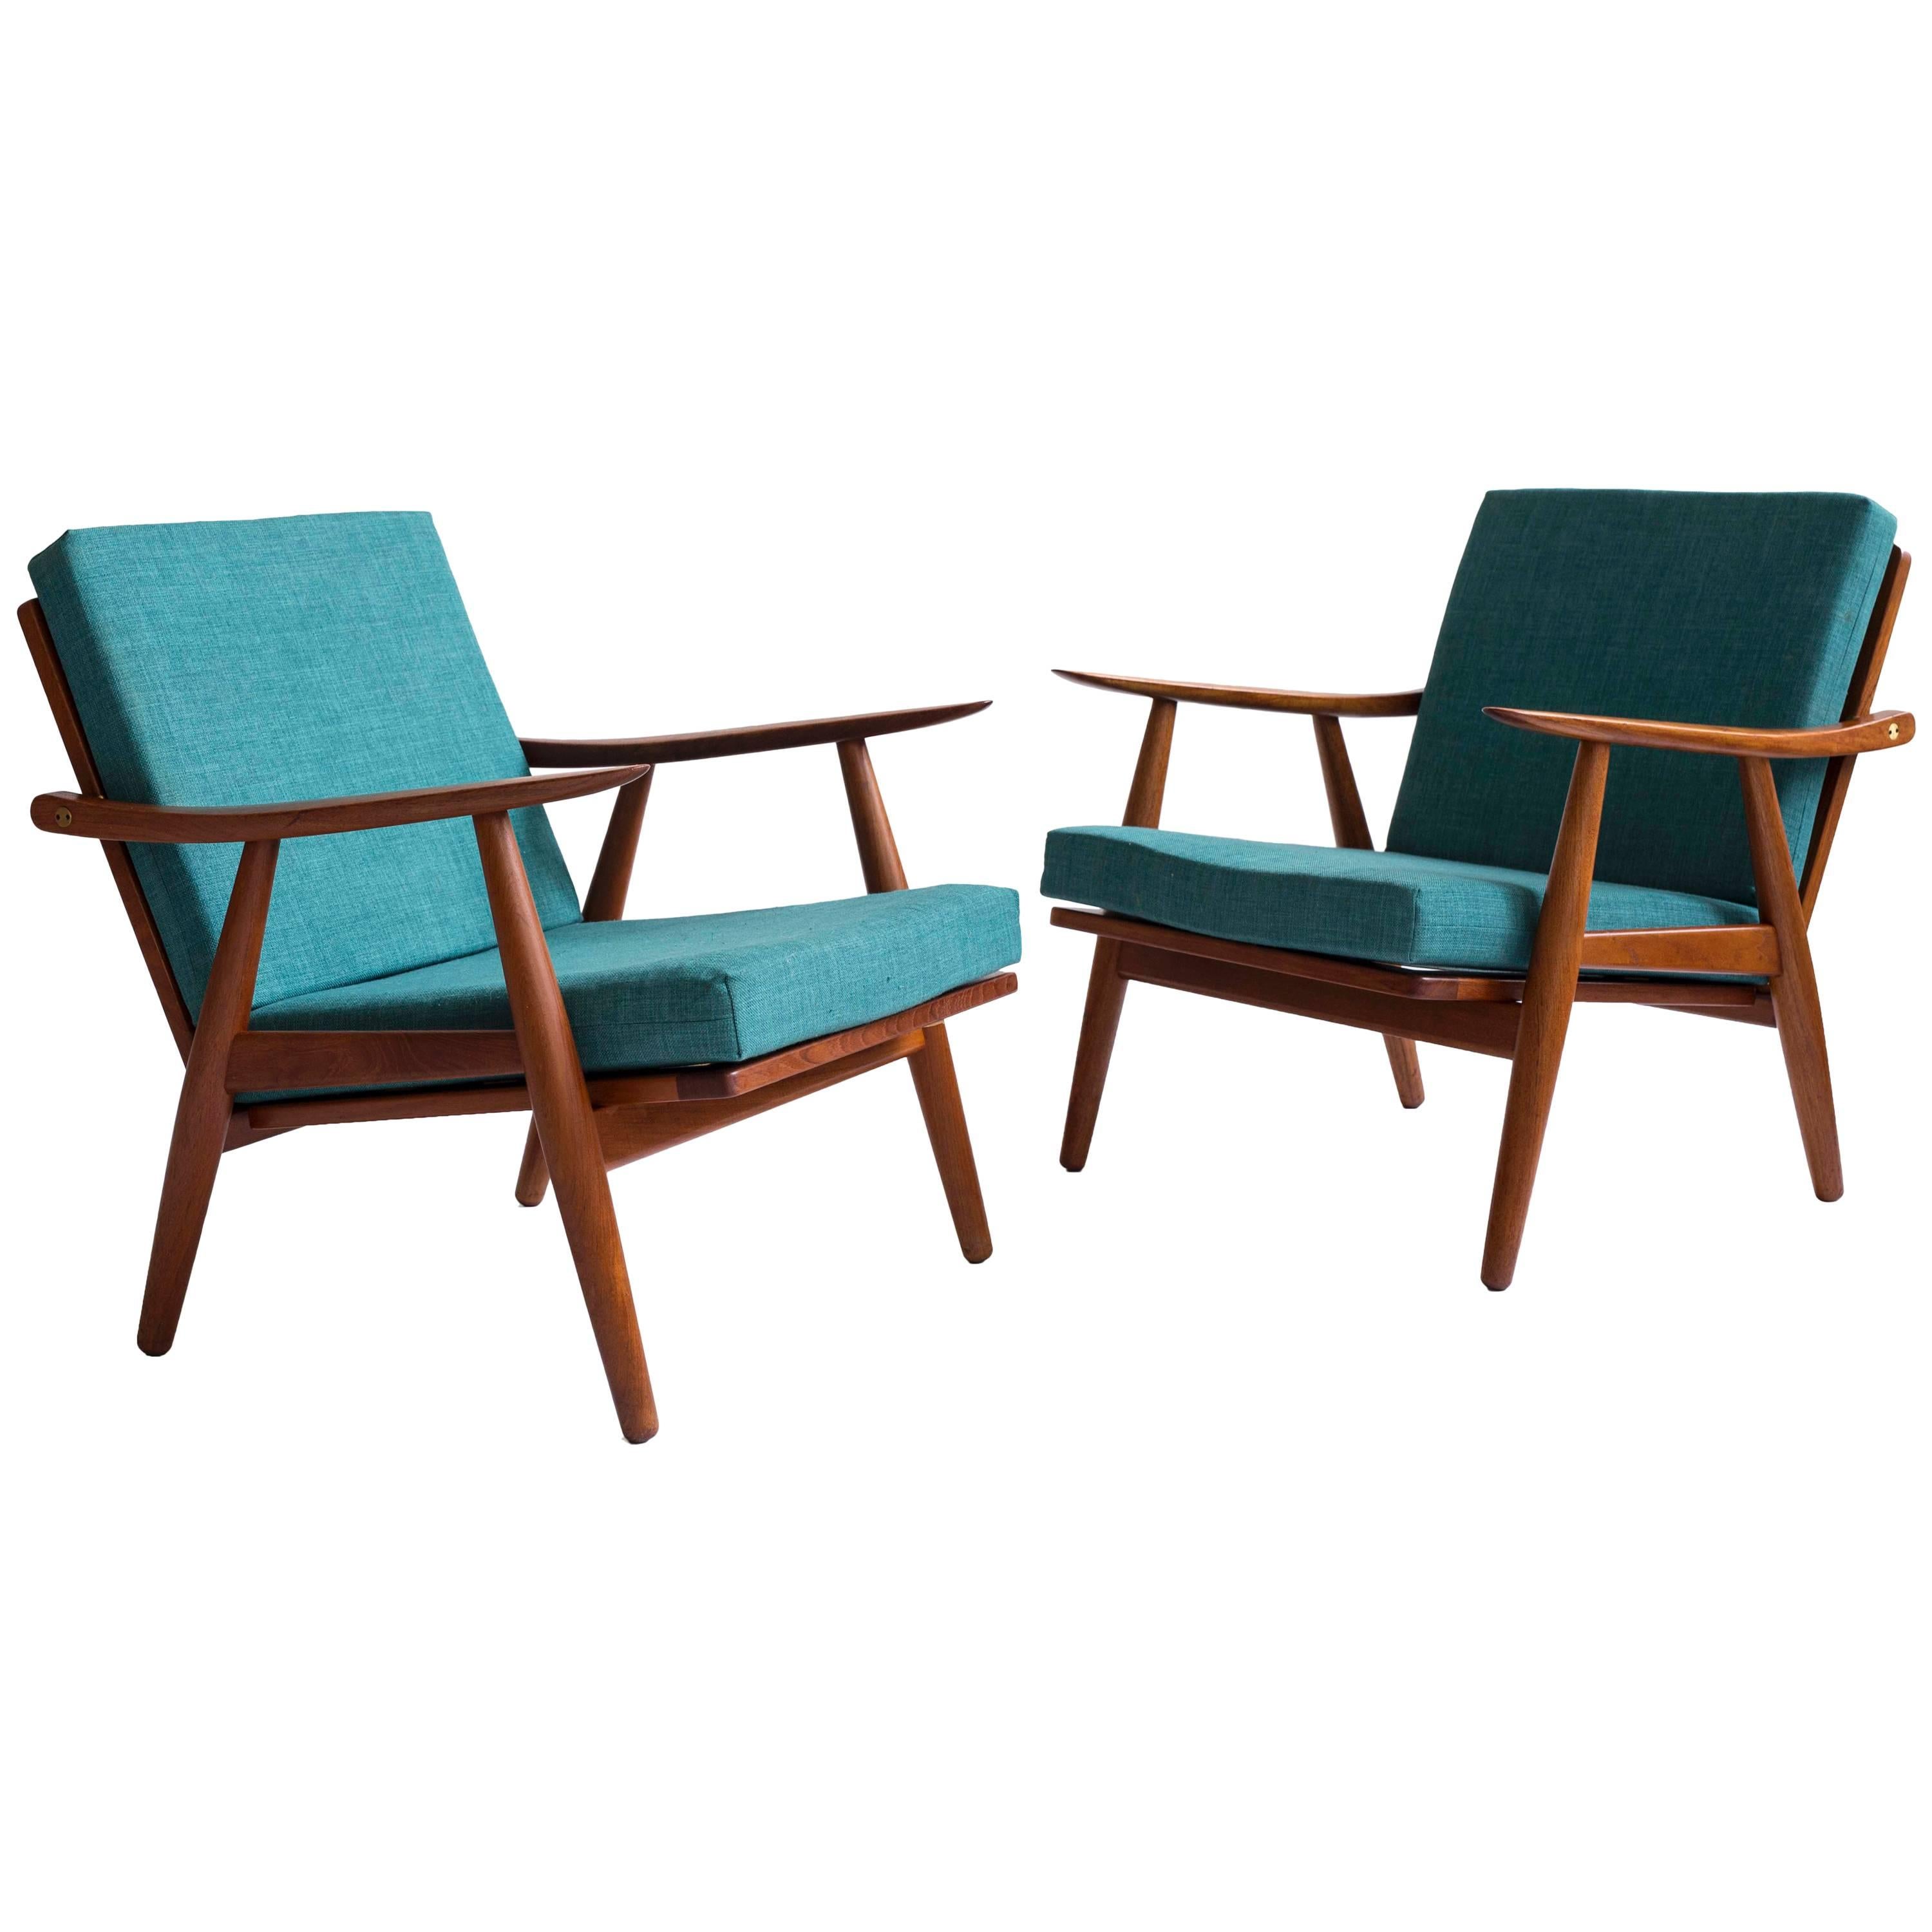 Pair of Hans J. Wegner GE270 Chairs for GETAMA